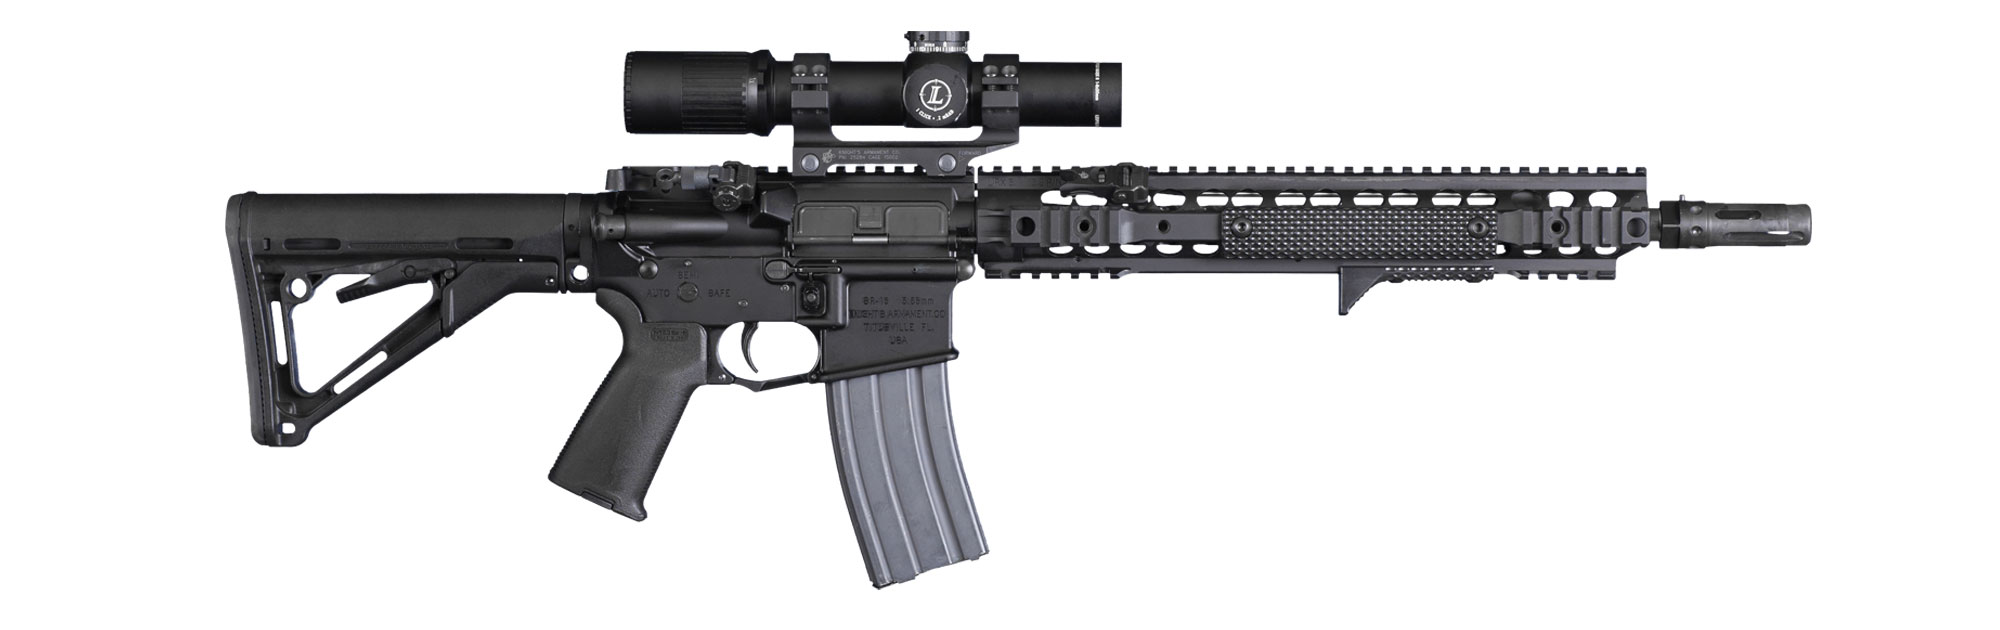 KAC SR-16 | Gun Wiki | Fandom